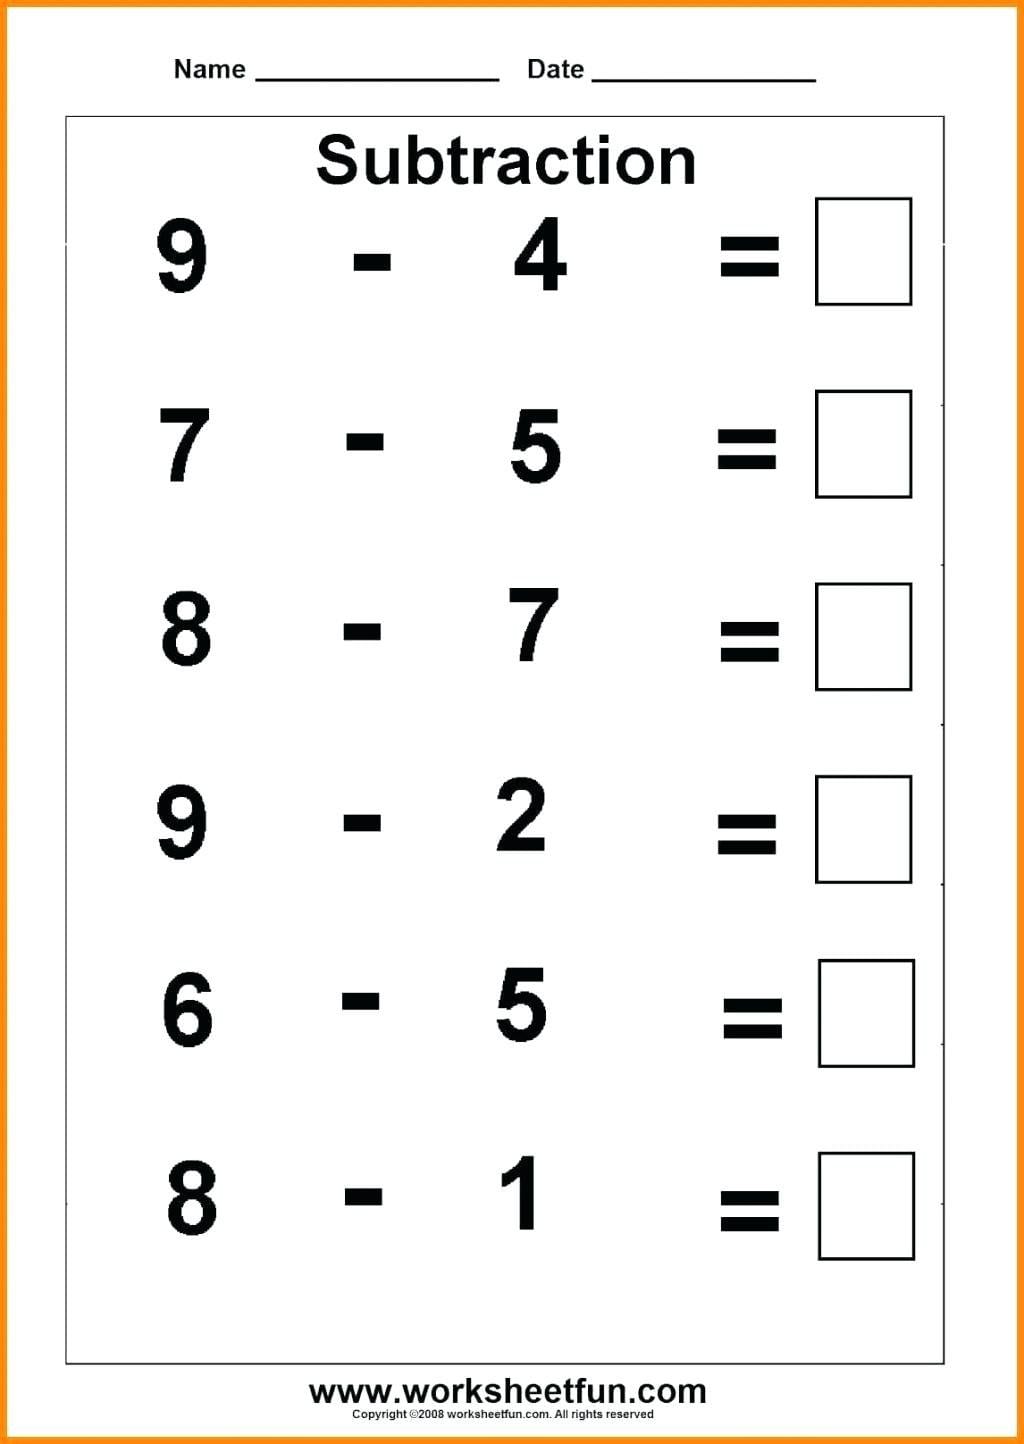 Basic Subtraction Worksheets Math Grade Simple Subtraction For First Grade Addition And Subtraction Worksheets